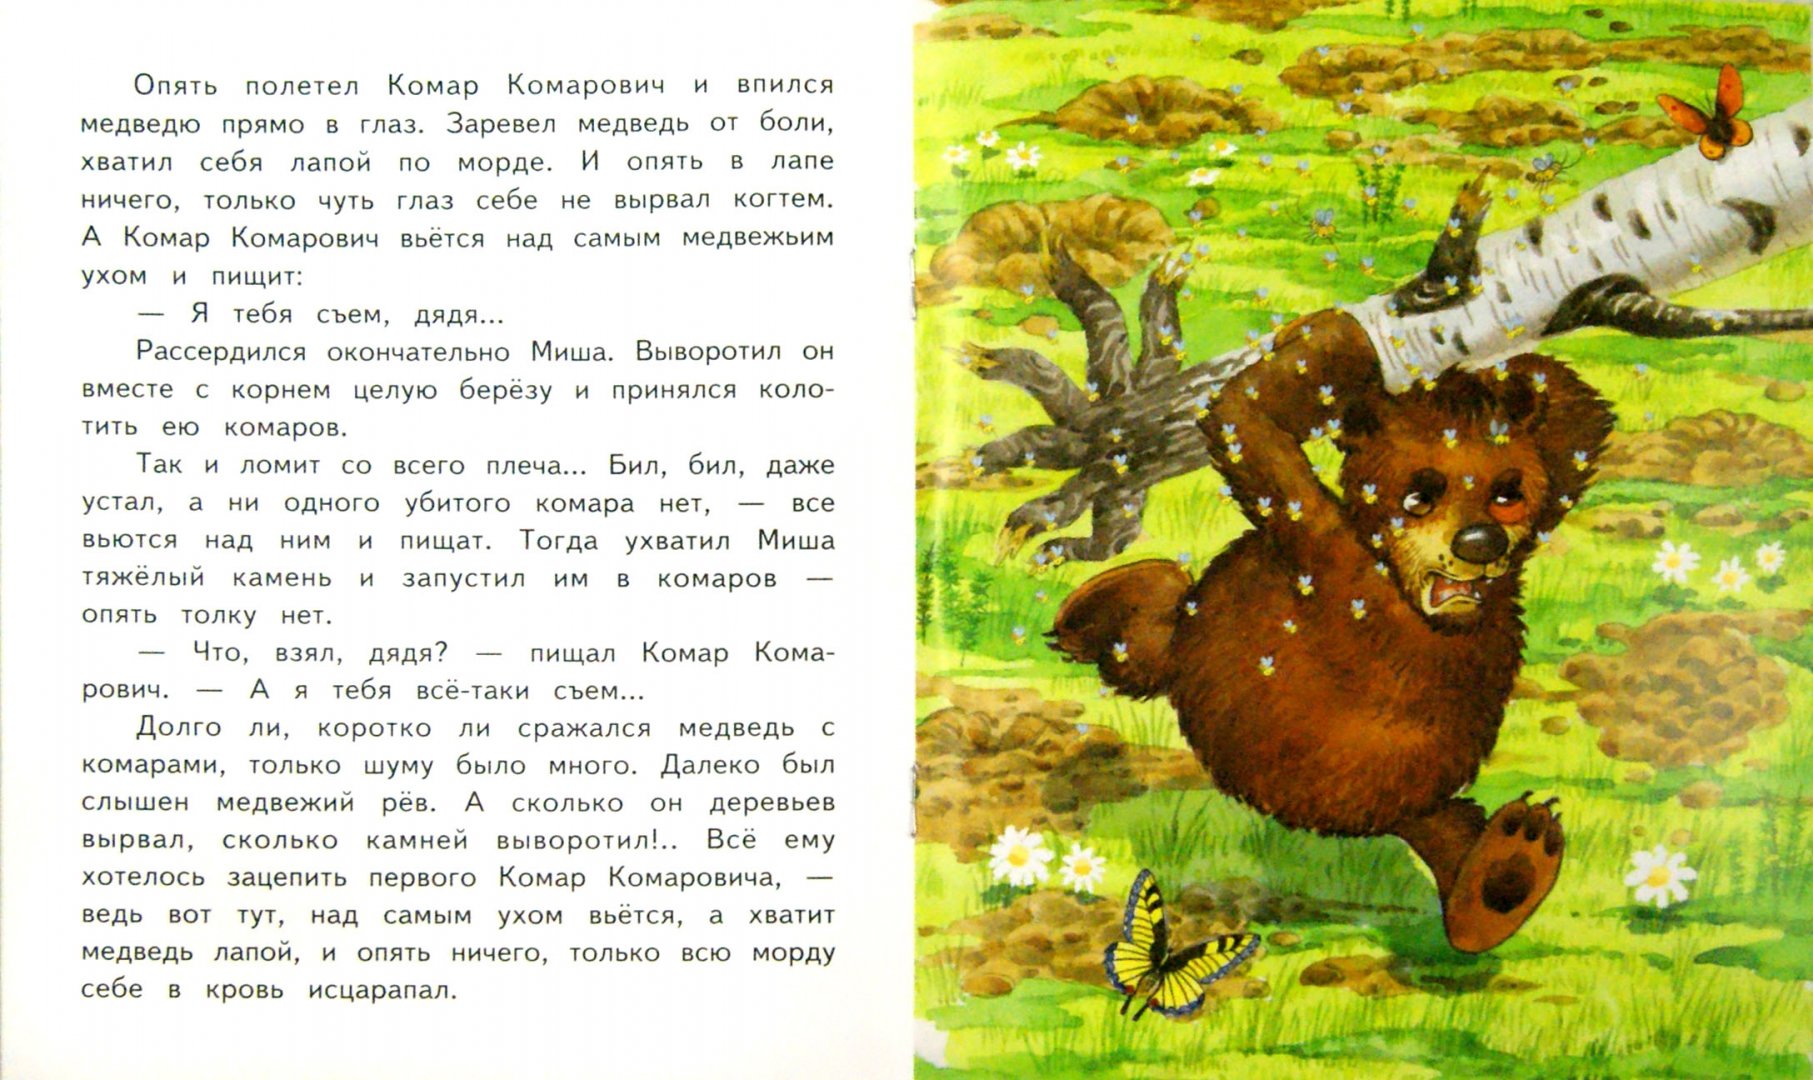 Иллюстрация 1 из 21 для Сказка про Комара Комаровича - длинный нос и мохнатого Мишу - короткий хвост - Дмитрий Мамин-Сибиряк | Лабиринт - книги. Источник: Лабиринт